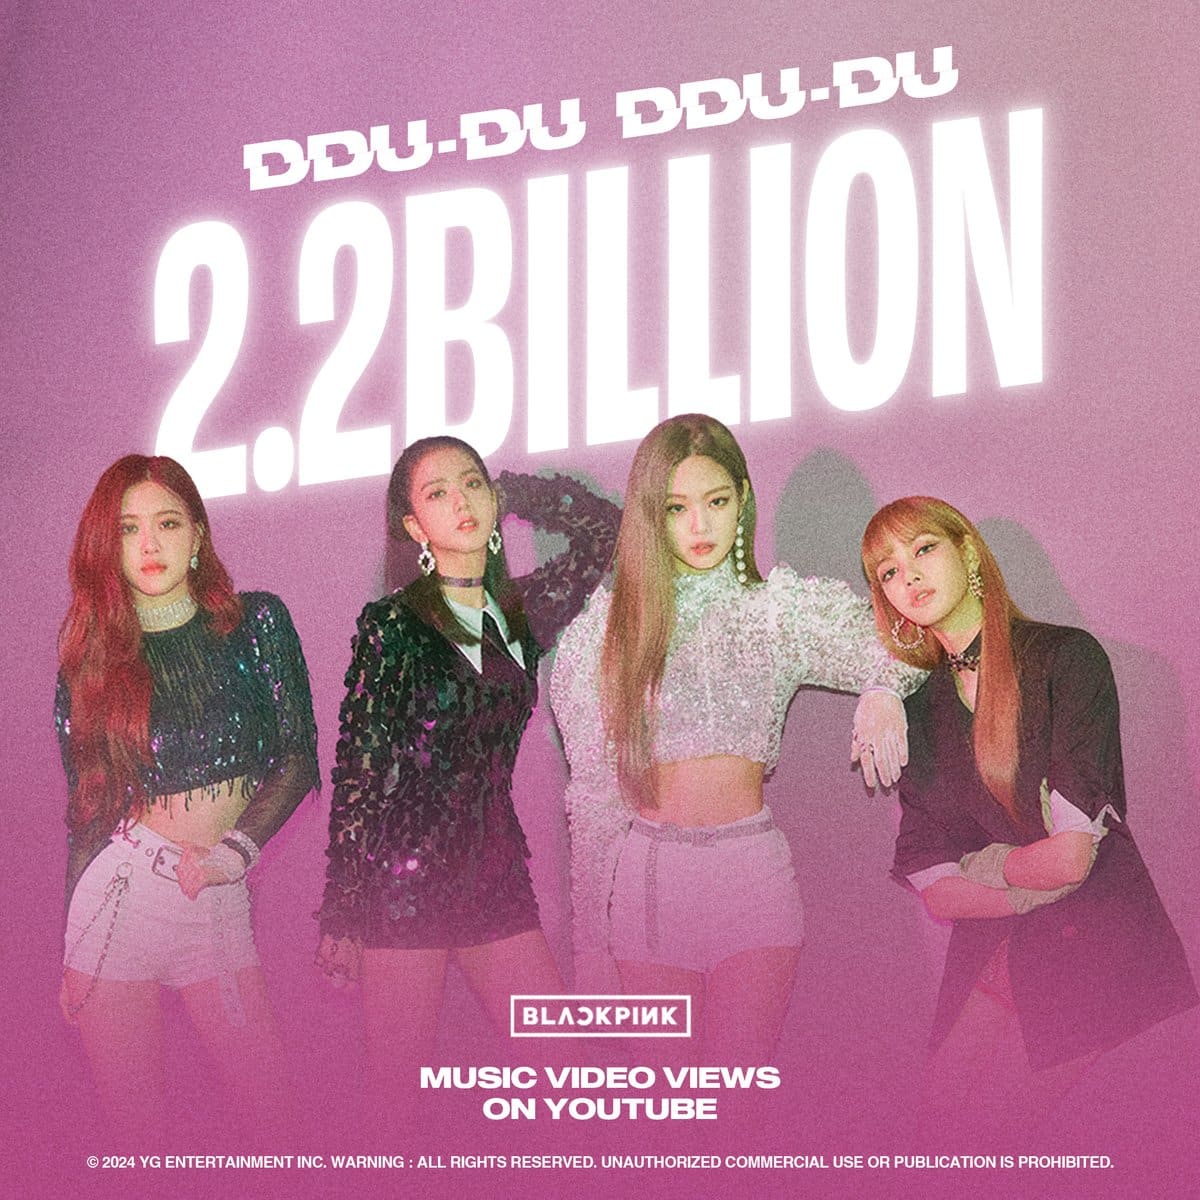 «DDU-DU DDU-DU» BLACKPINK стал первым клипом K-Pop группы, набравшим 2,2 миллиарда просмотров